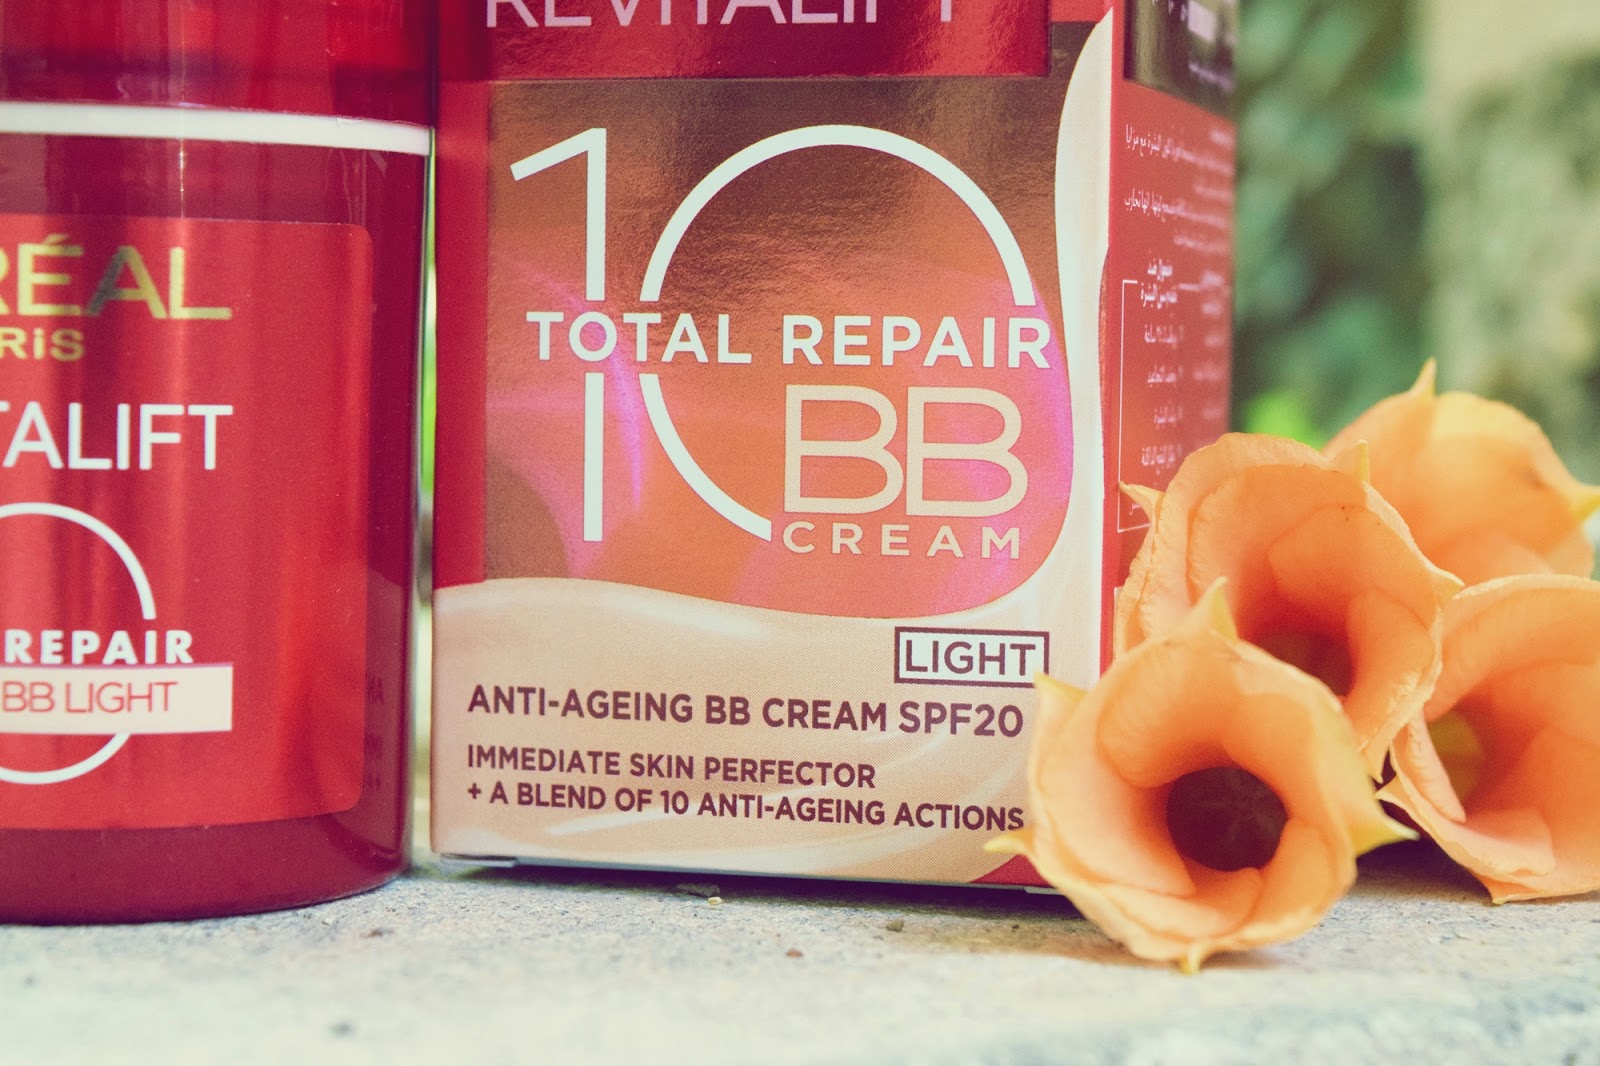 L'Oreal Revitalift Total Repair BB Cream